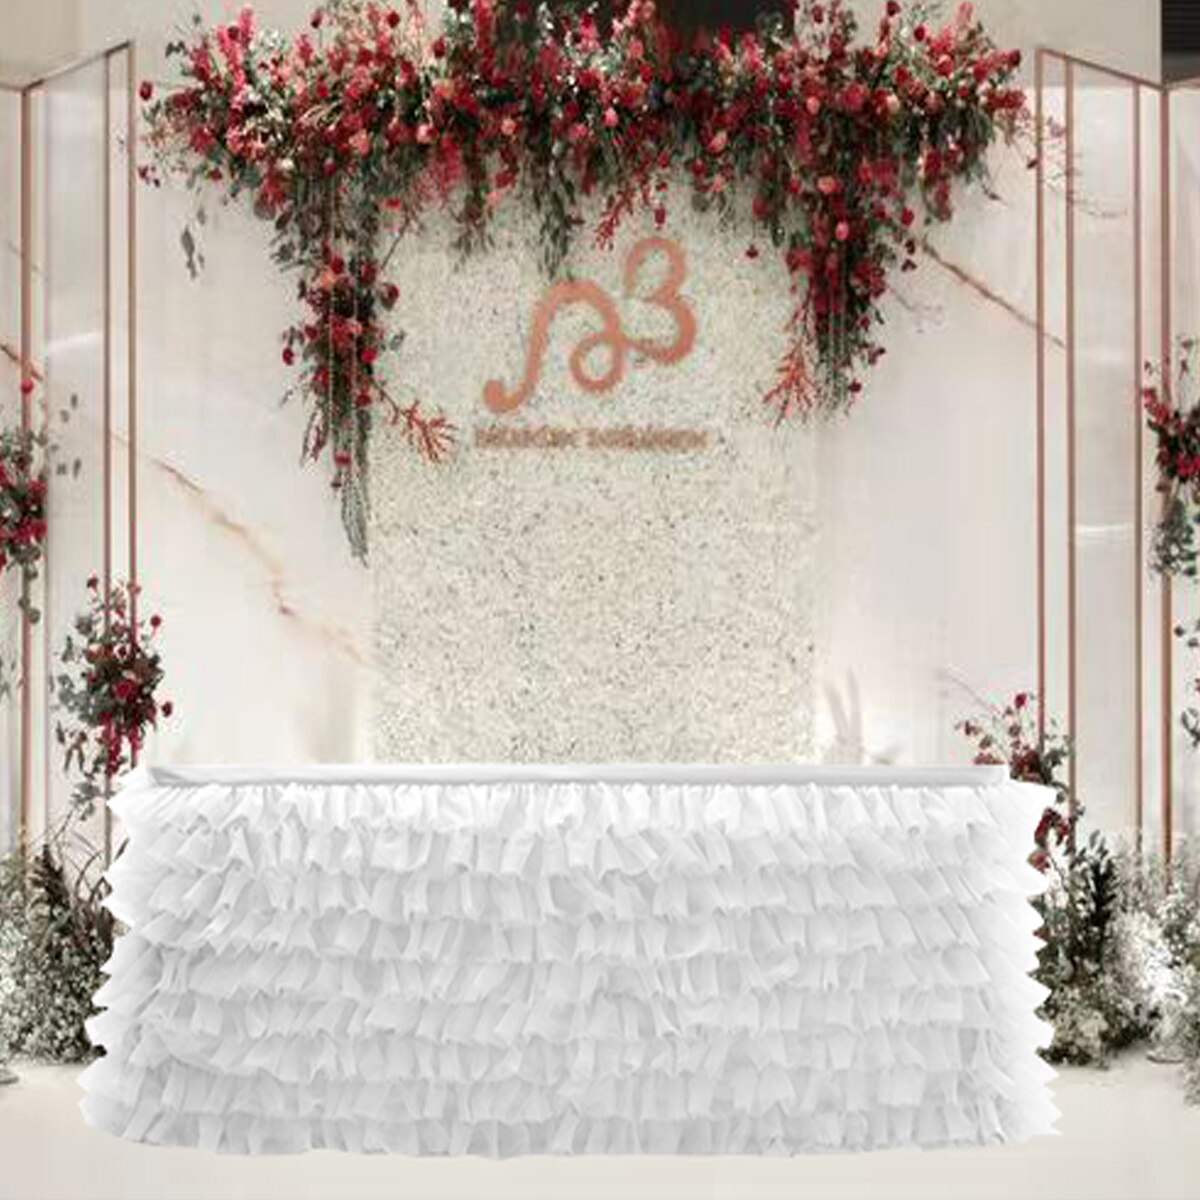 Bord nederdel tyl bord nederdel til bryllup dekoration baby shower fødselsdag fest fest bryllup bord fodpaneler 180 x 77cm: Hvid